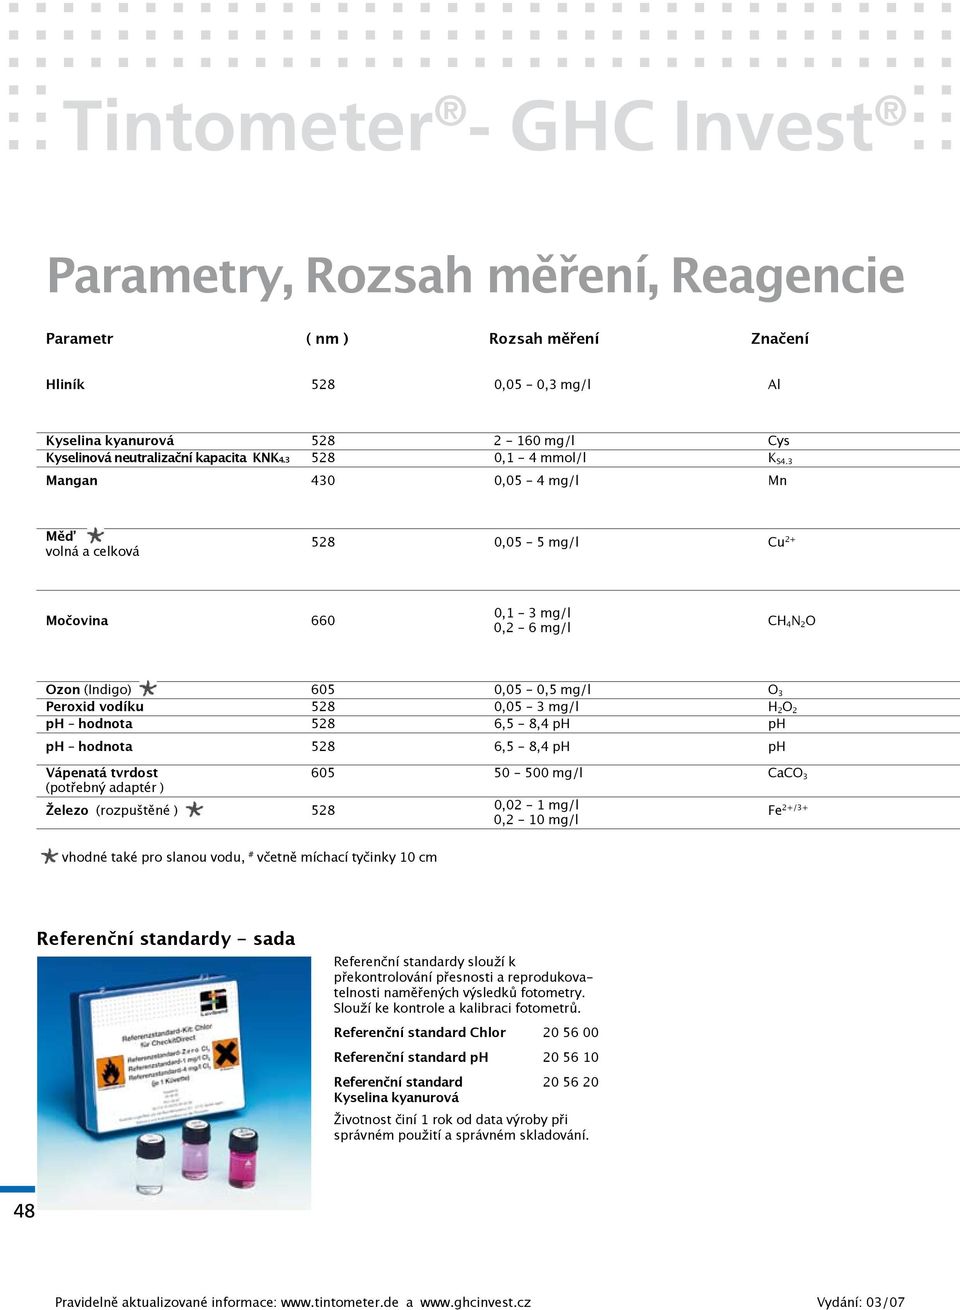 3 Mangan 430 0,05-4 mg/l Mn Měď volná a celková 528 0,05-5 mg/l Cu 2+ 0,1-3 mg/l Močovina 660 CH 4 N 2 O 0,2-6 mg/l Ozon (Indigo) 605 0,05-0,5 mg/l O 3 Peroxid vodíku 528 0,05-3 mg/l H 2 O 2 ph